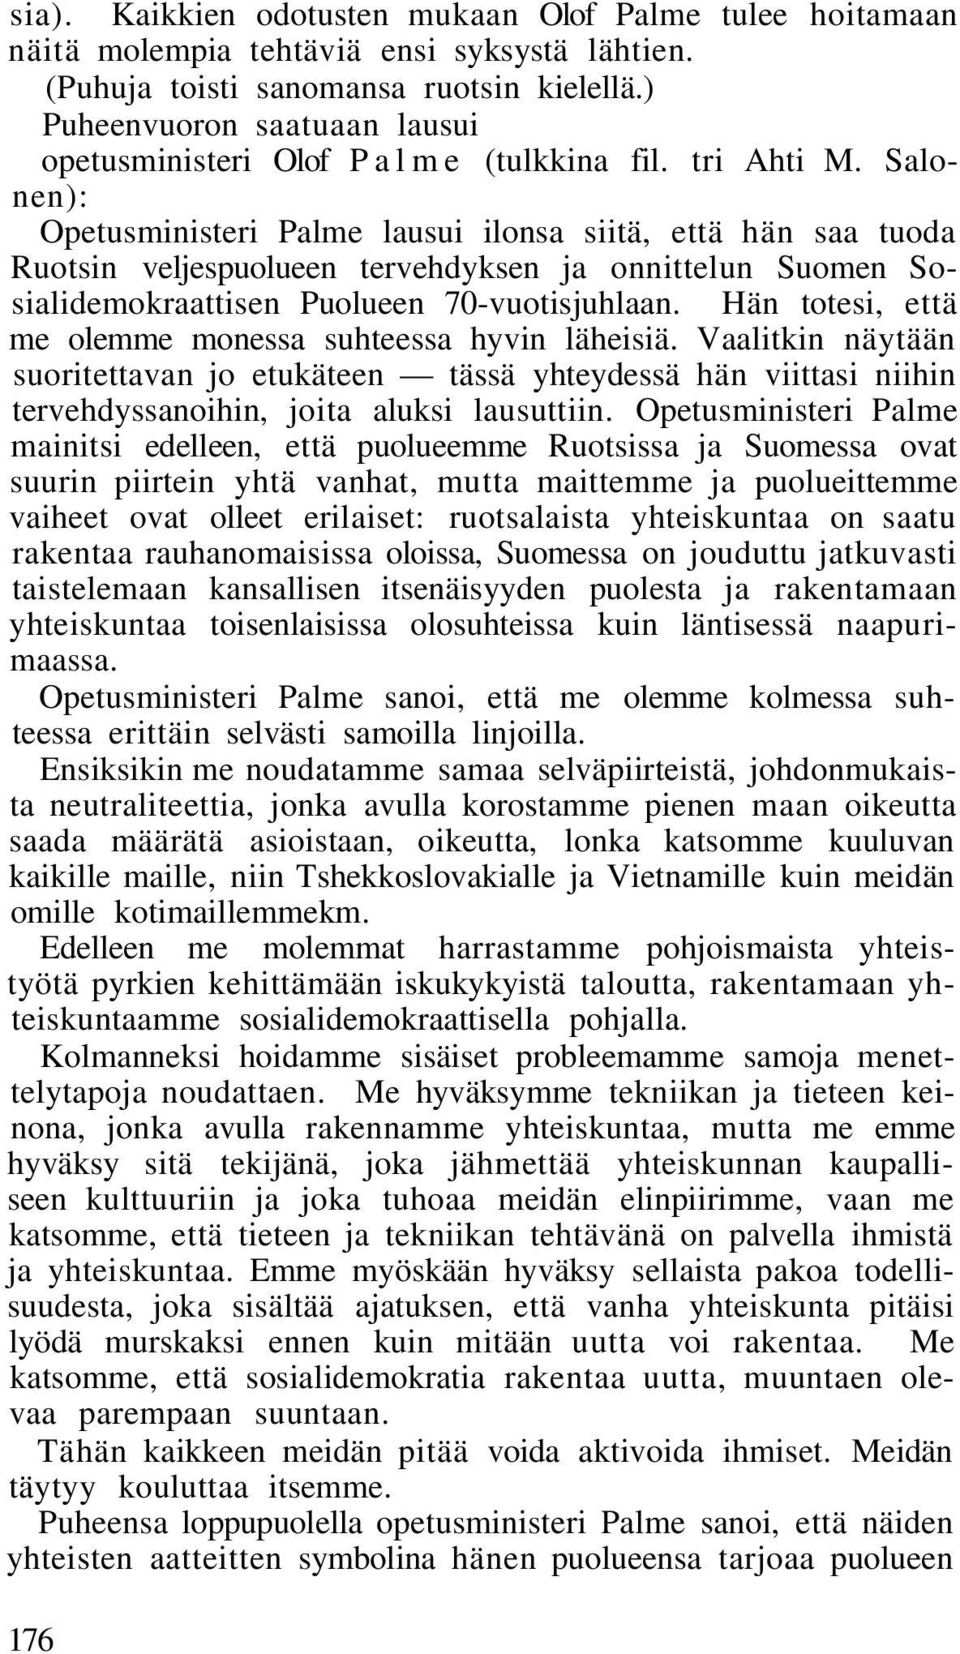 Salonen): Opetusministeri Palme lausui ilonsa siitä, että hän saa tuoda Ruotsin veljespuolueen tervehdyksen ja onnittelun Suomen Sosialidemokraattisen Puolueen 70-vuotisjuhlaan.